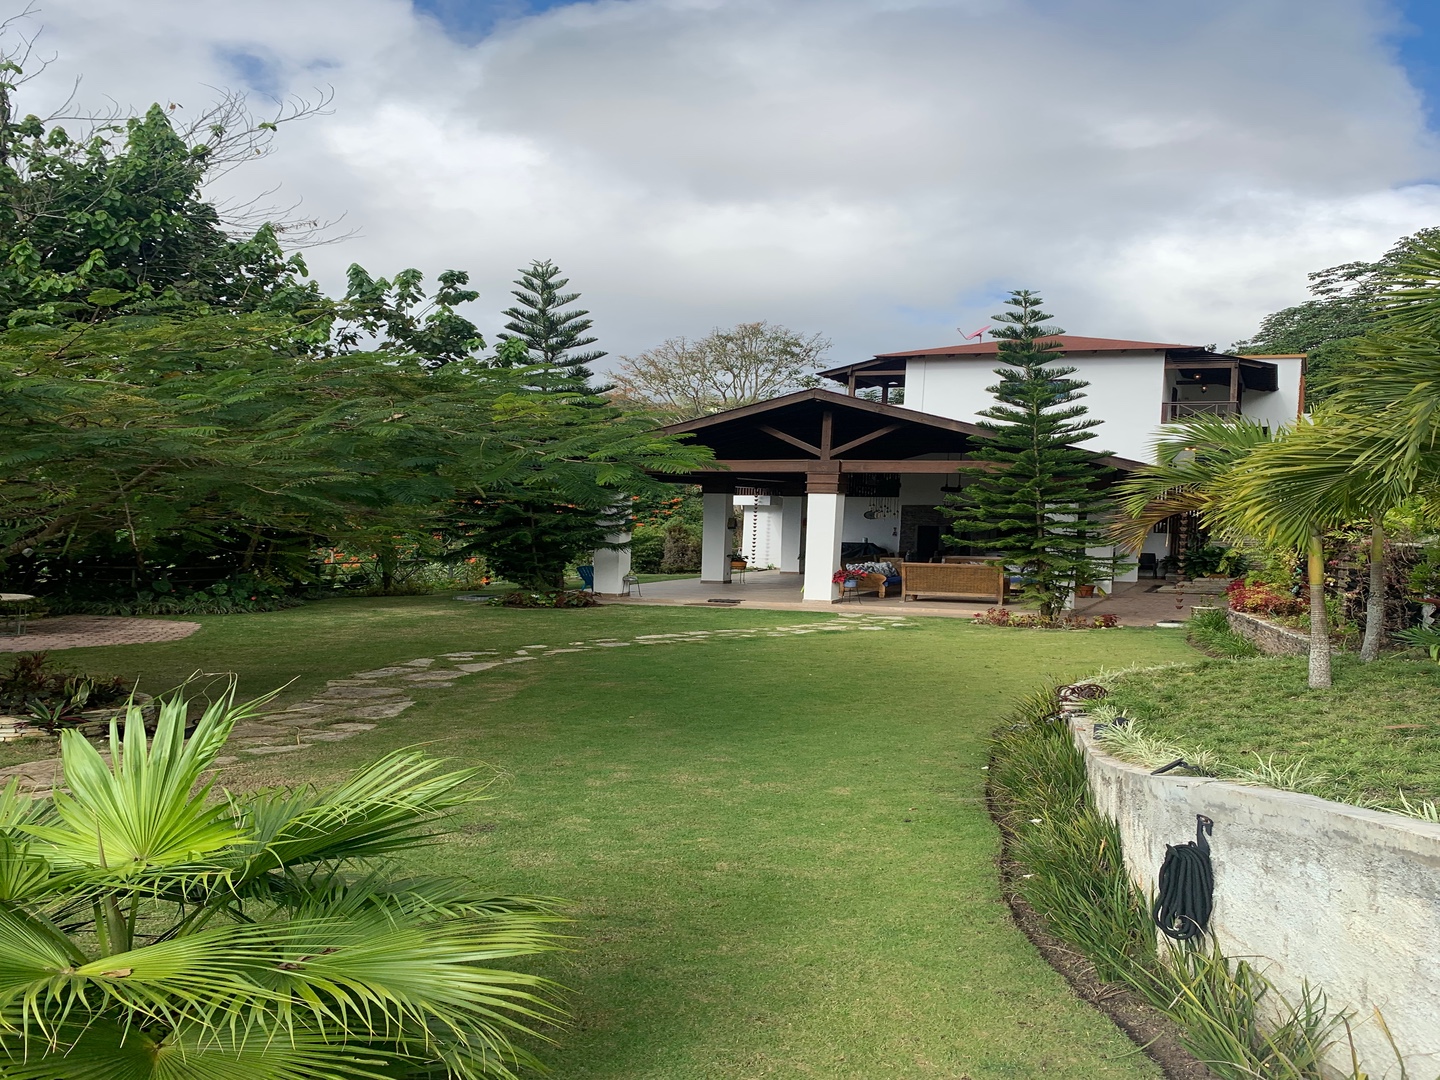 casas vacacionales y villas - Vendo Casa de veraneo en La montaña de San Cristobal Cambita Majagual La colonia